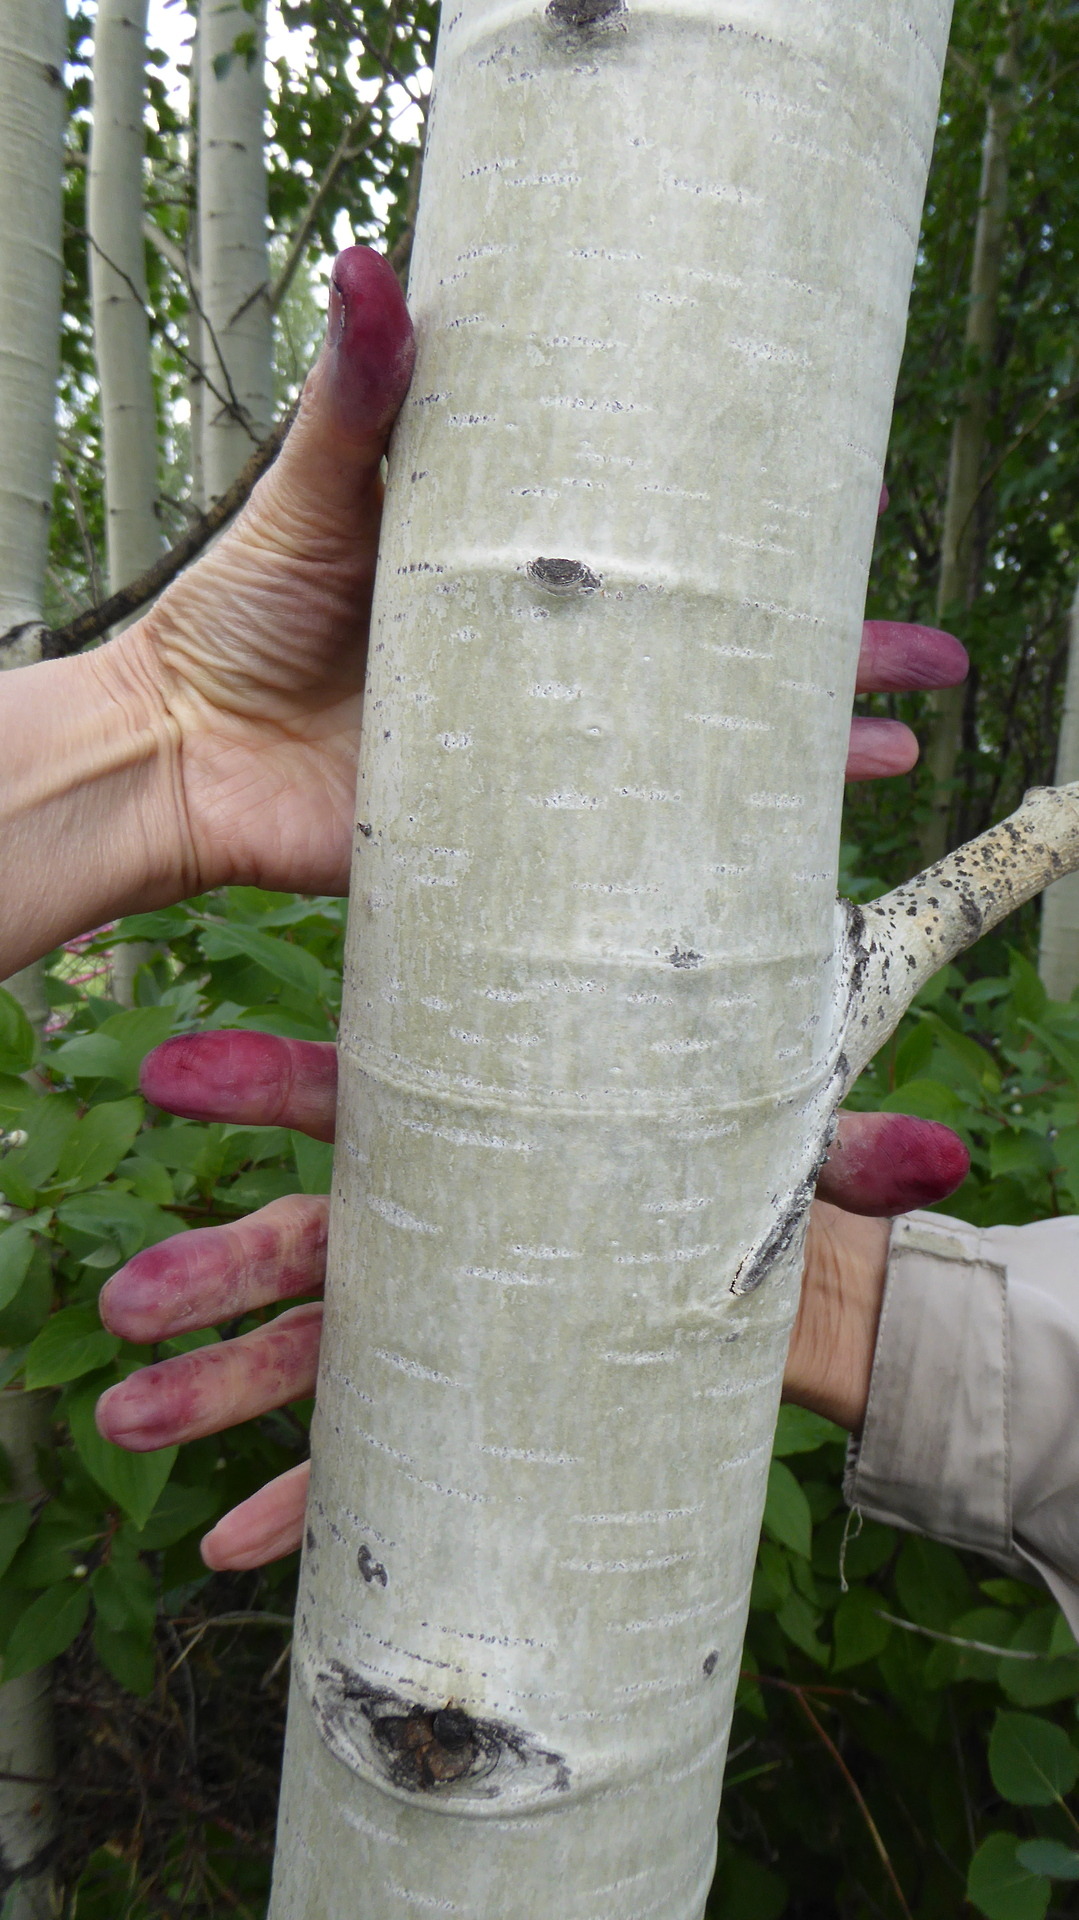 Saskatoon berry stained finger around Alder tree trunk. Photo by Barbara Bickel